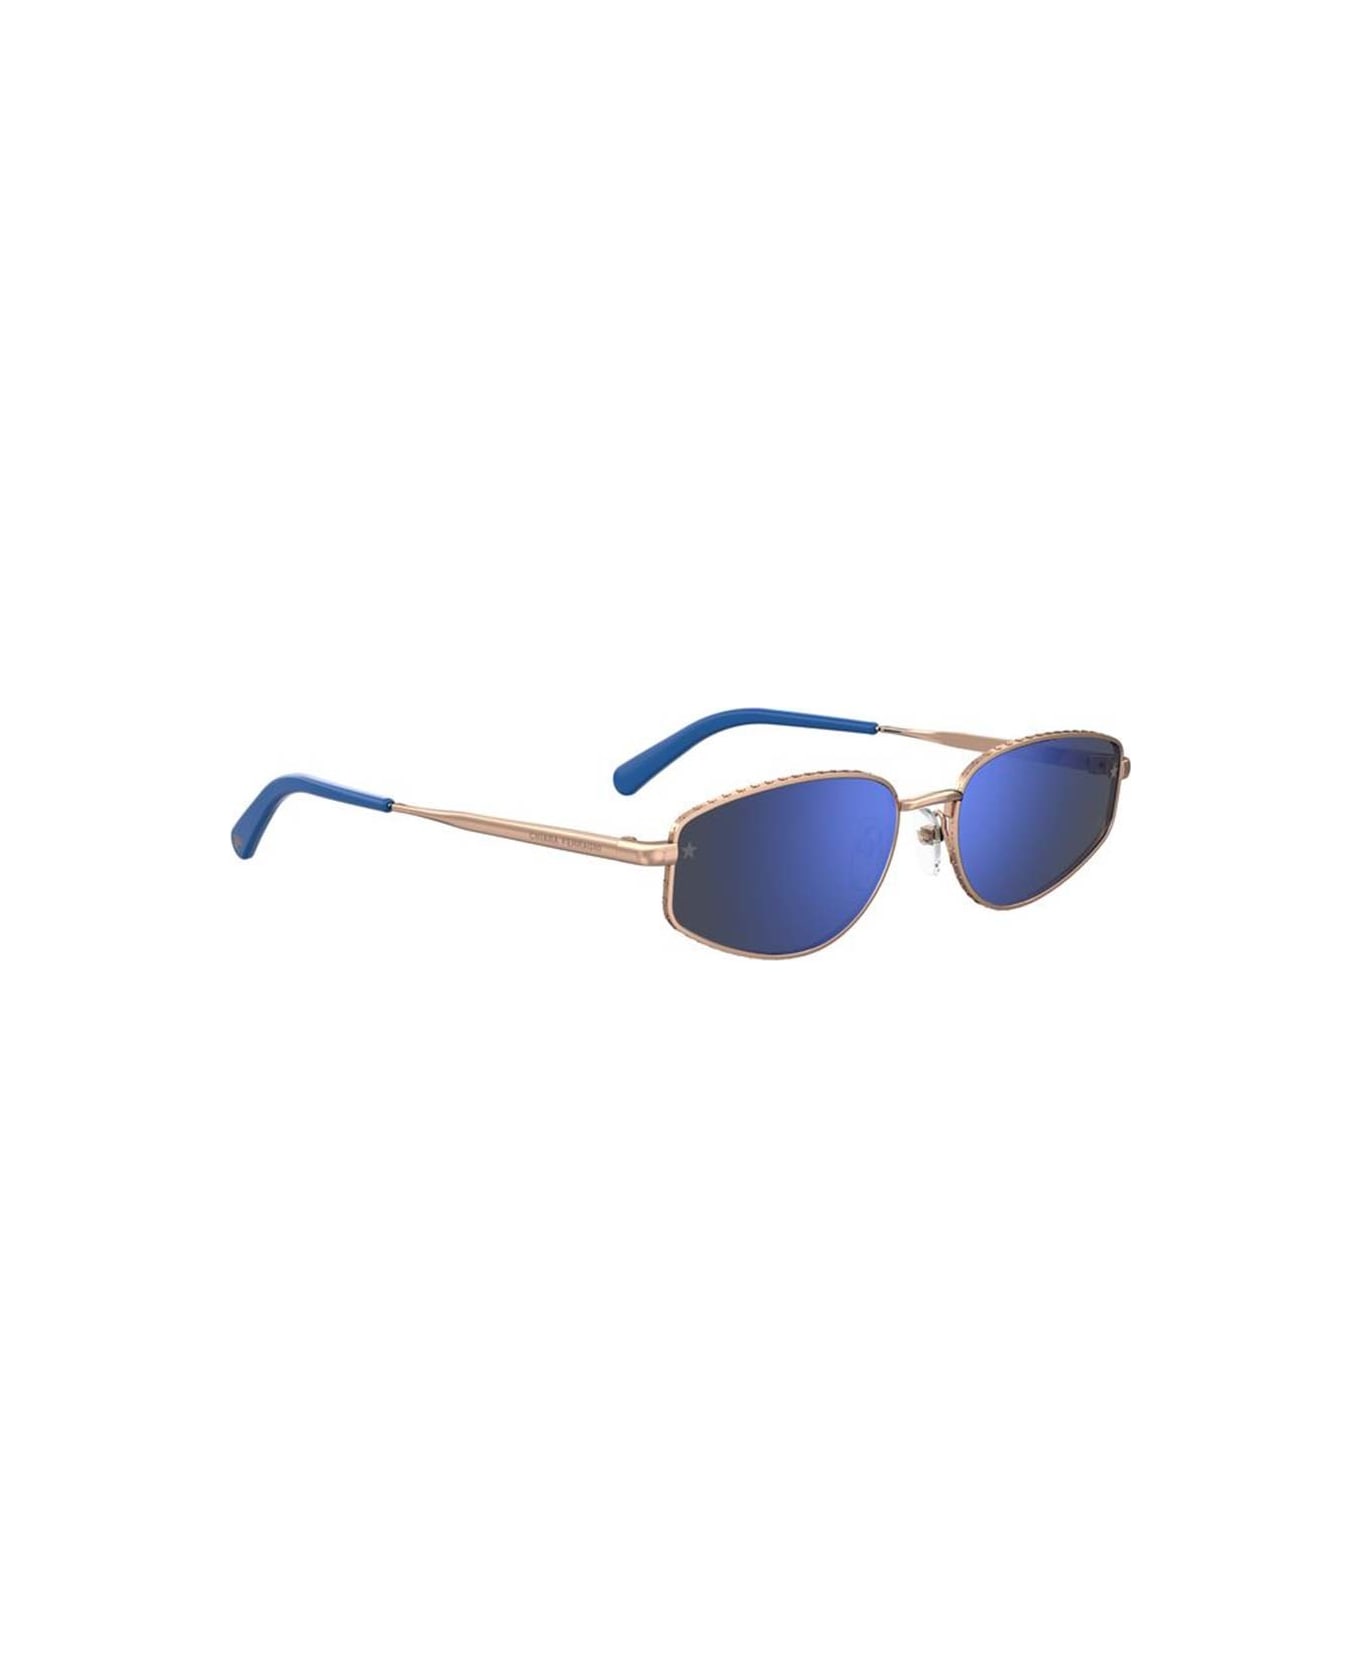 Chiara Ferragni Sunglasses - Oro/Blu